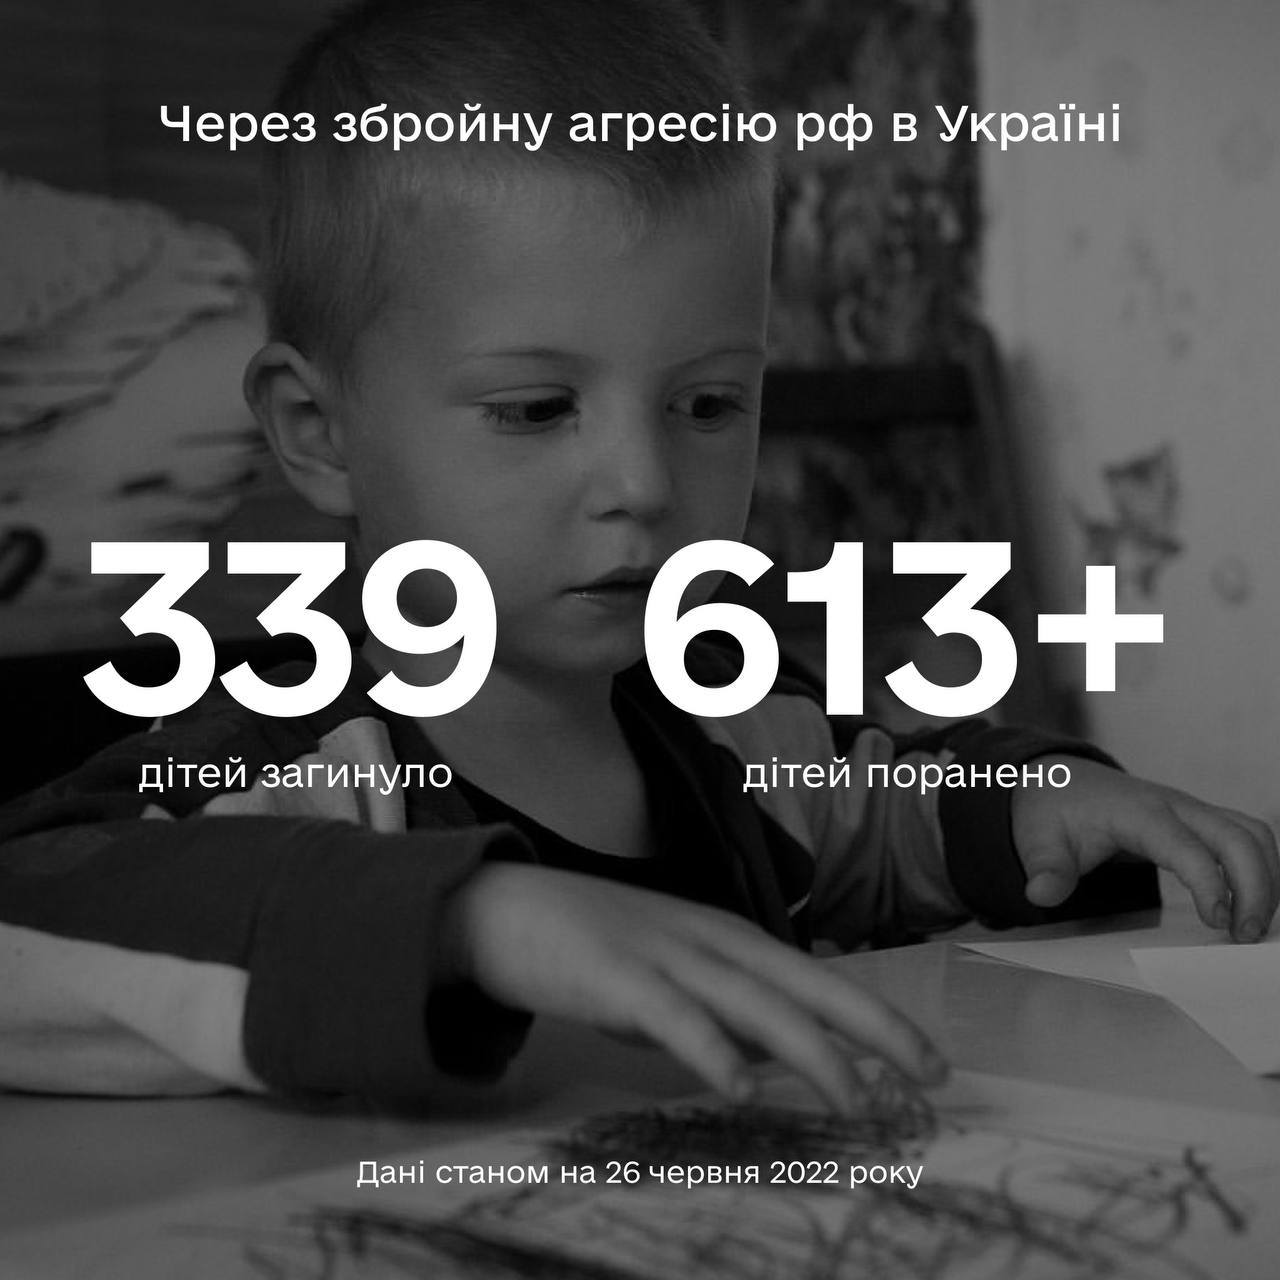 Більше ніж 952 дитини постраждали в Україні внаслідок повномасштабної збройної агресії рф в Україні